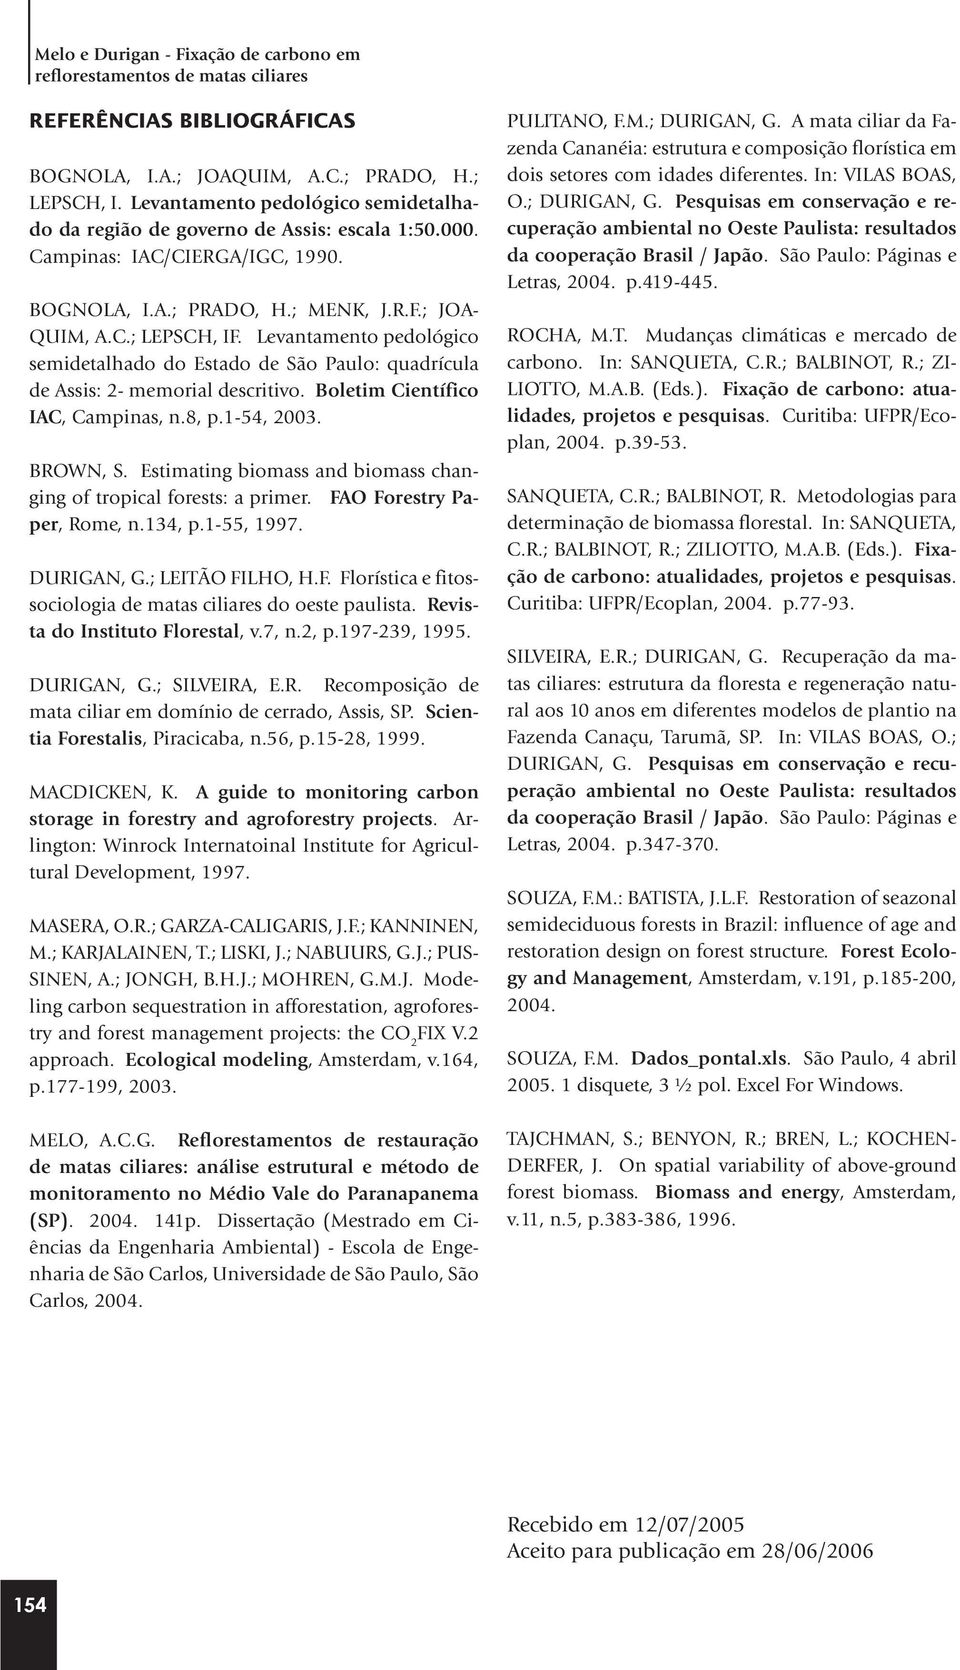 Levantamento pedológico semidetalhado do Estado de São Paulo: quadrícula de Assis: 2- memorial descritivo. Boletim Científico IAC, Campinas, n.8, p.1-54, 2003. BROWN, S.